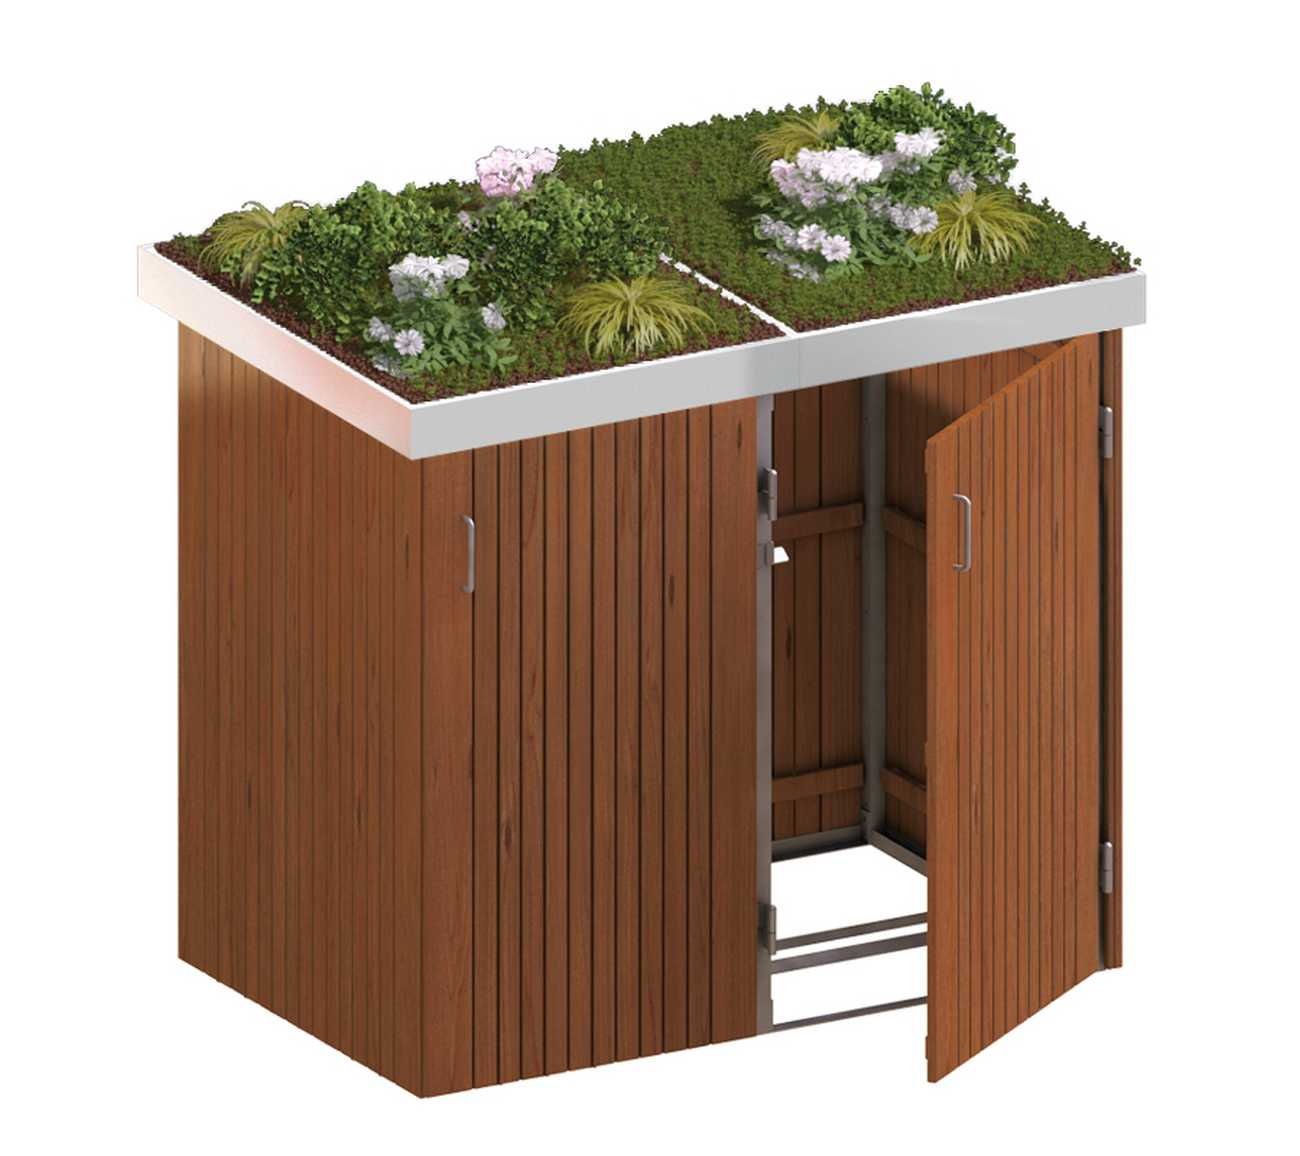 Binto Mülltonnenbox mit Hartholz-Verkleidung und Edelstahl-Pflanzschalen